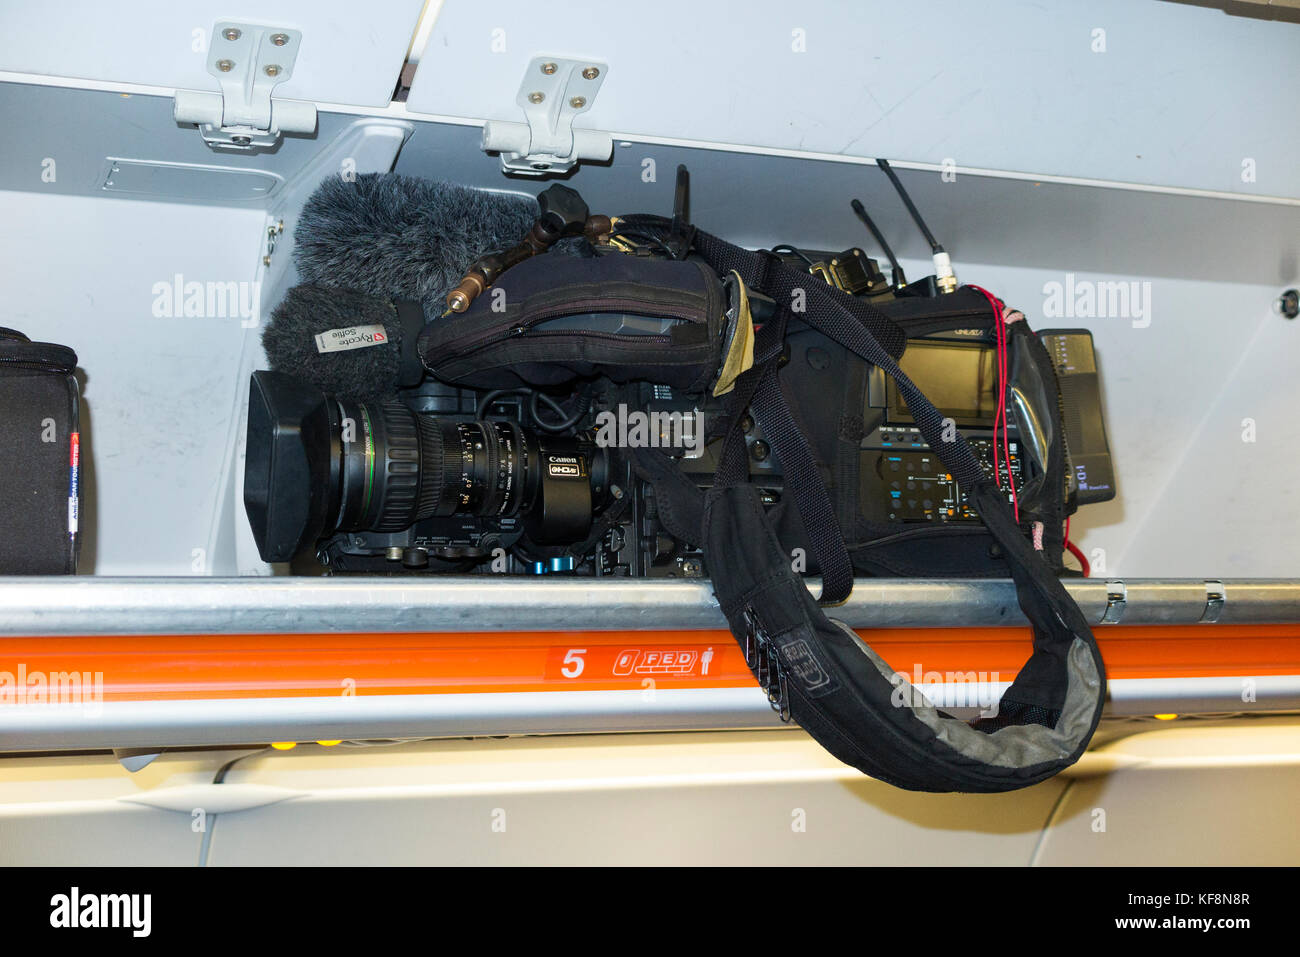 Teure wertvolle TV-Kamera/tv Kameras sicher verstaut in luftventilation auf einem Easyjey Airbus A320 Flugzeug/Flugzeug/Flugzeug/Flug. Stockfoto